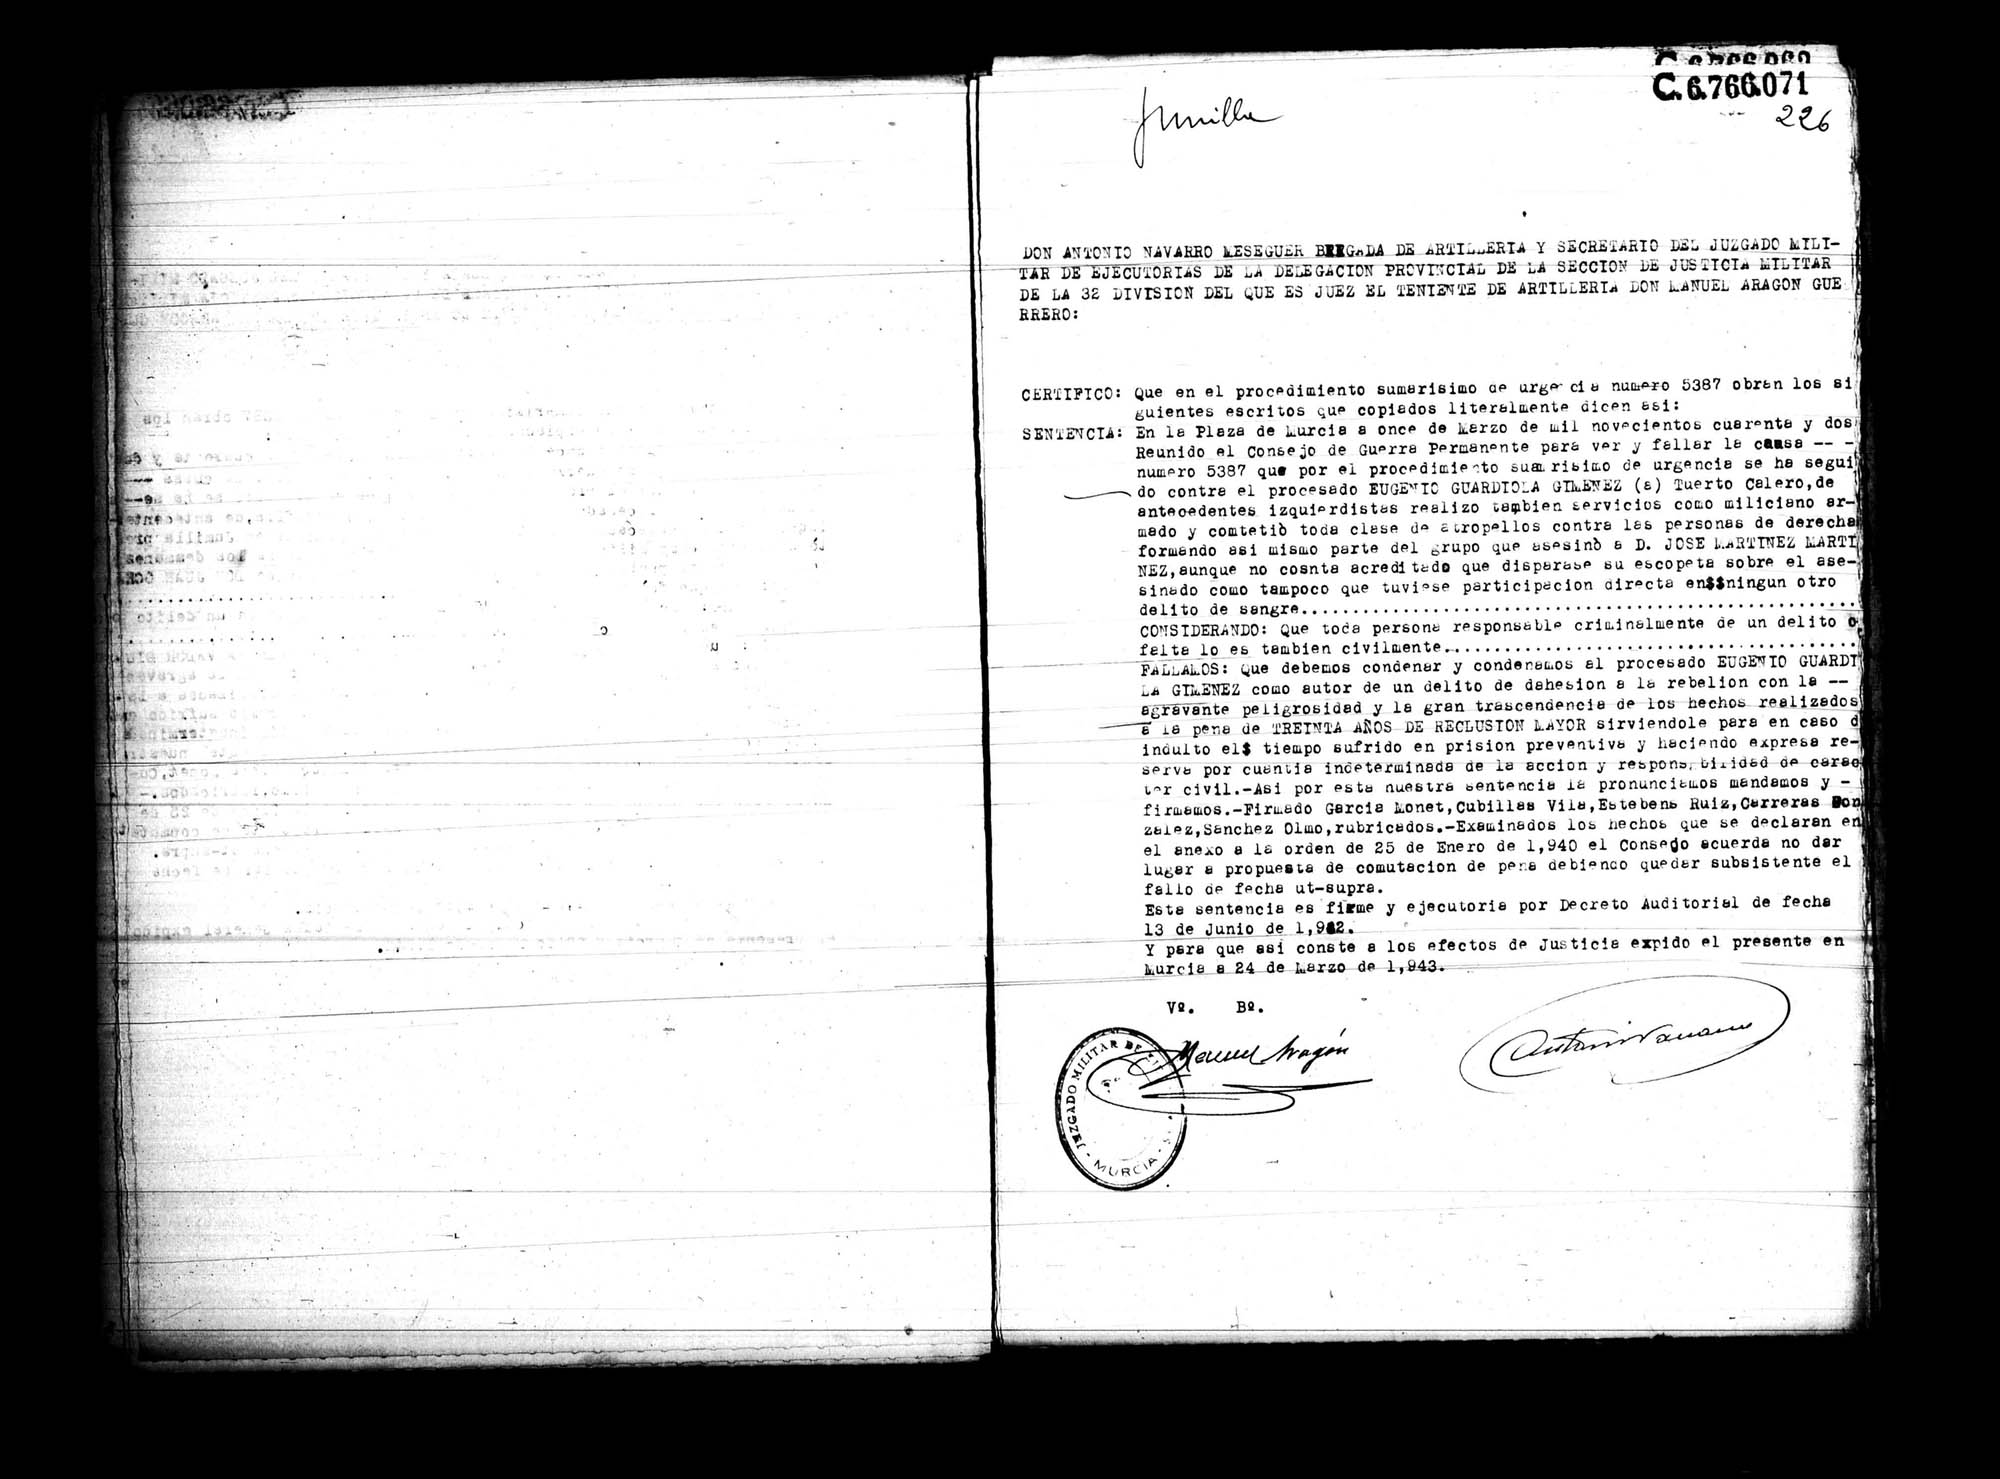 Certificado de la sentencia pronunciada contra Eugenio Guardiola Giménez, causa 5387, el 11 de marzo de 1942 en Murcia.